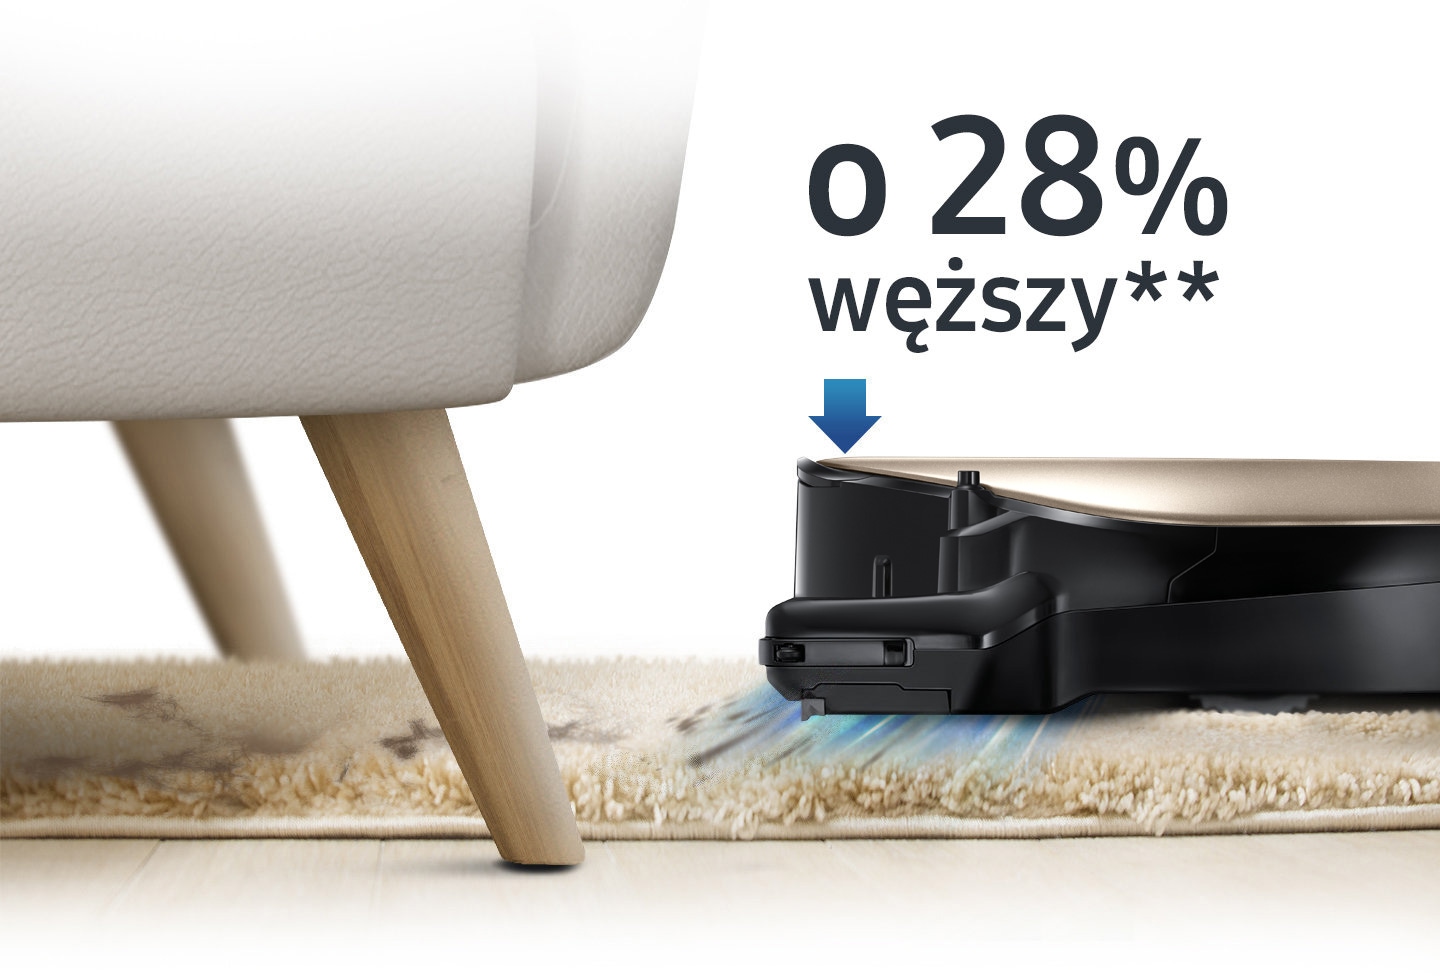 Un'immagine che mostra un dispositivo POWERbot VR7000 che aspira un tappeto e pulisce sotto il divano, oltre a un'icona che legge "il 28% piÃ¹ sottile".